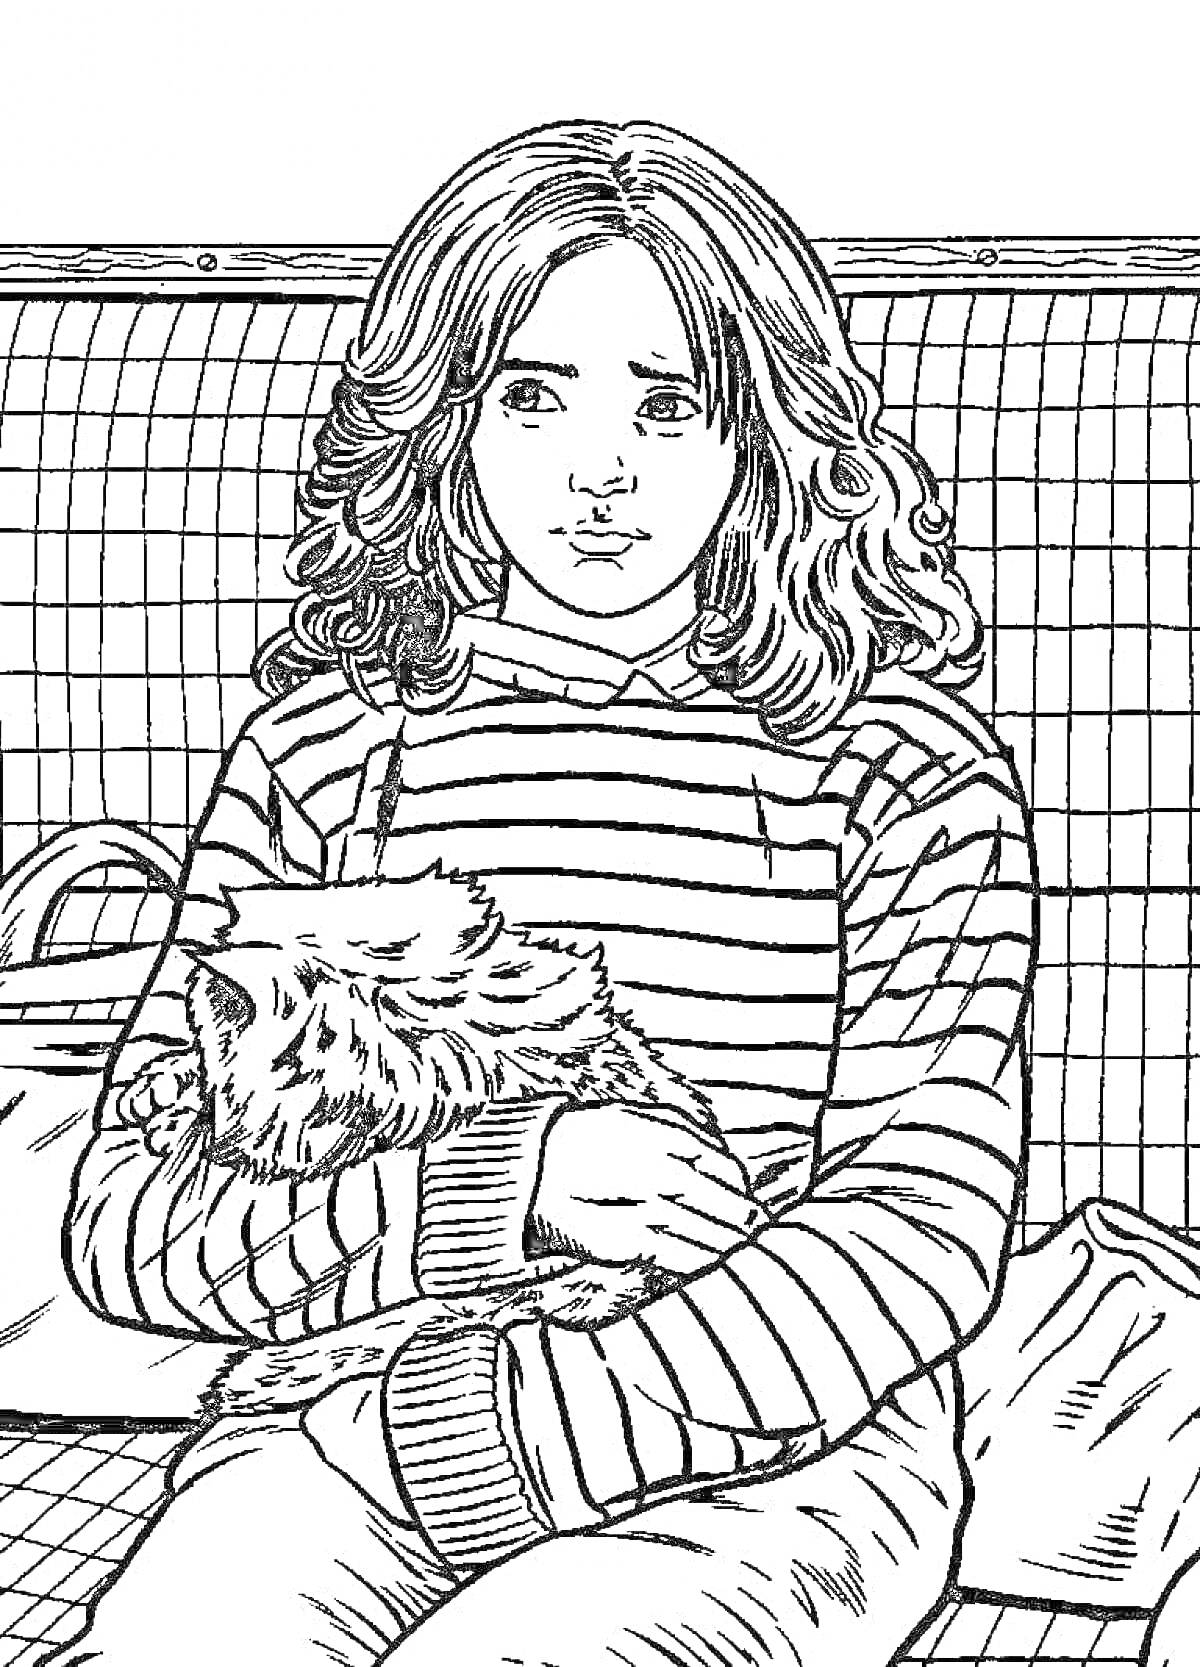 Гермиона Грейнджер с кошкой в руках